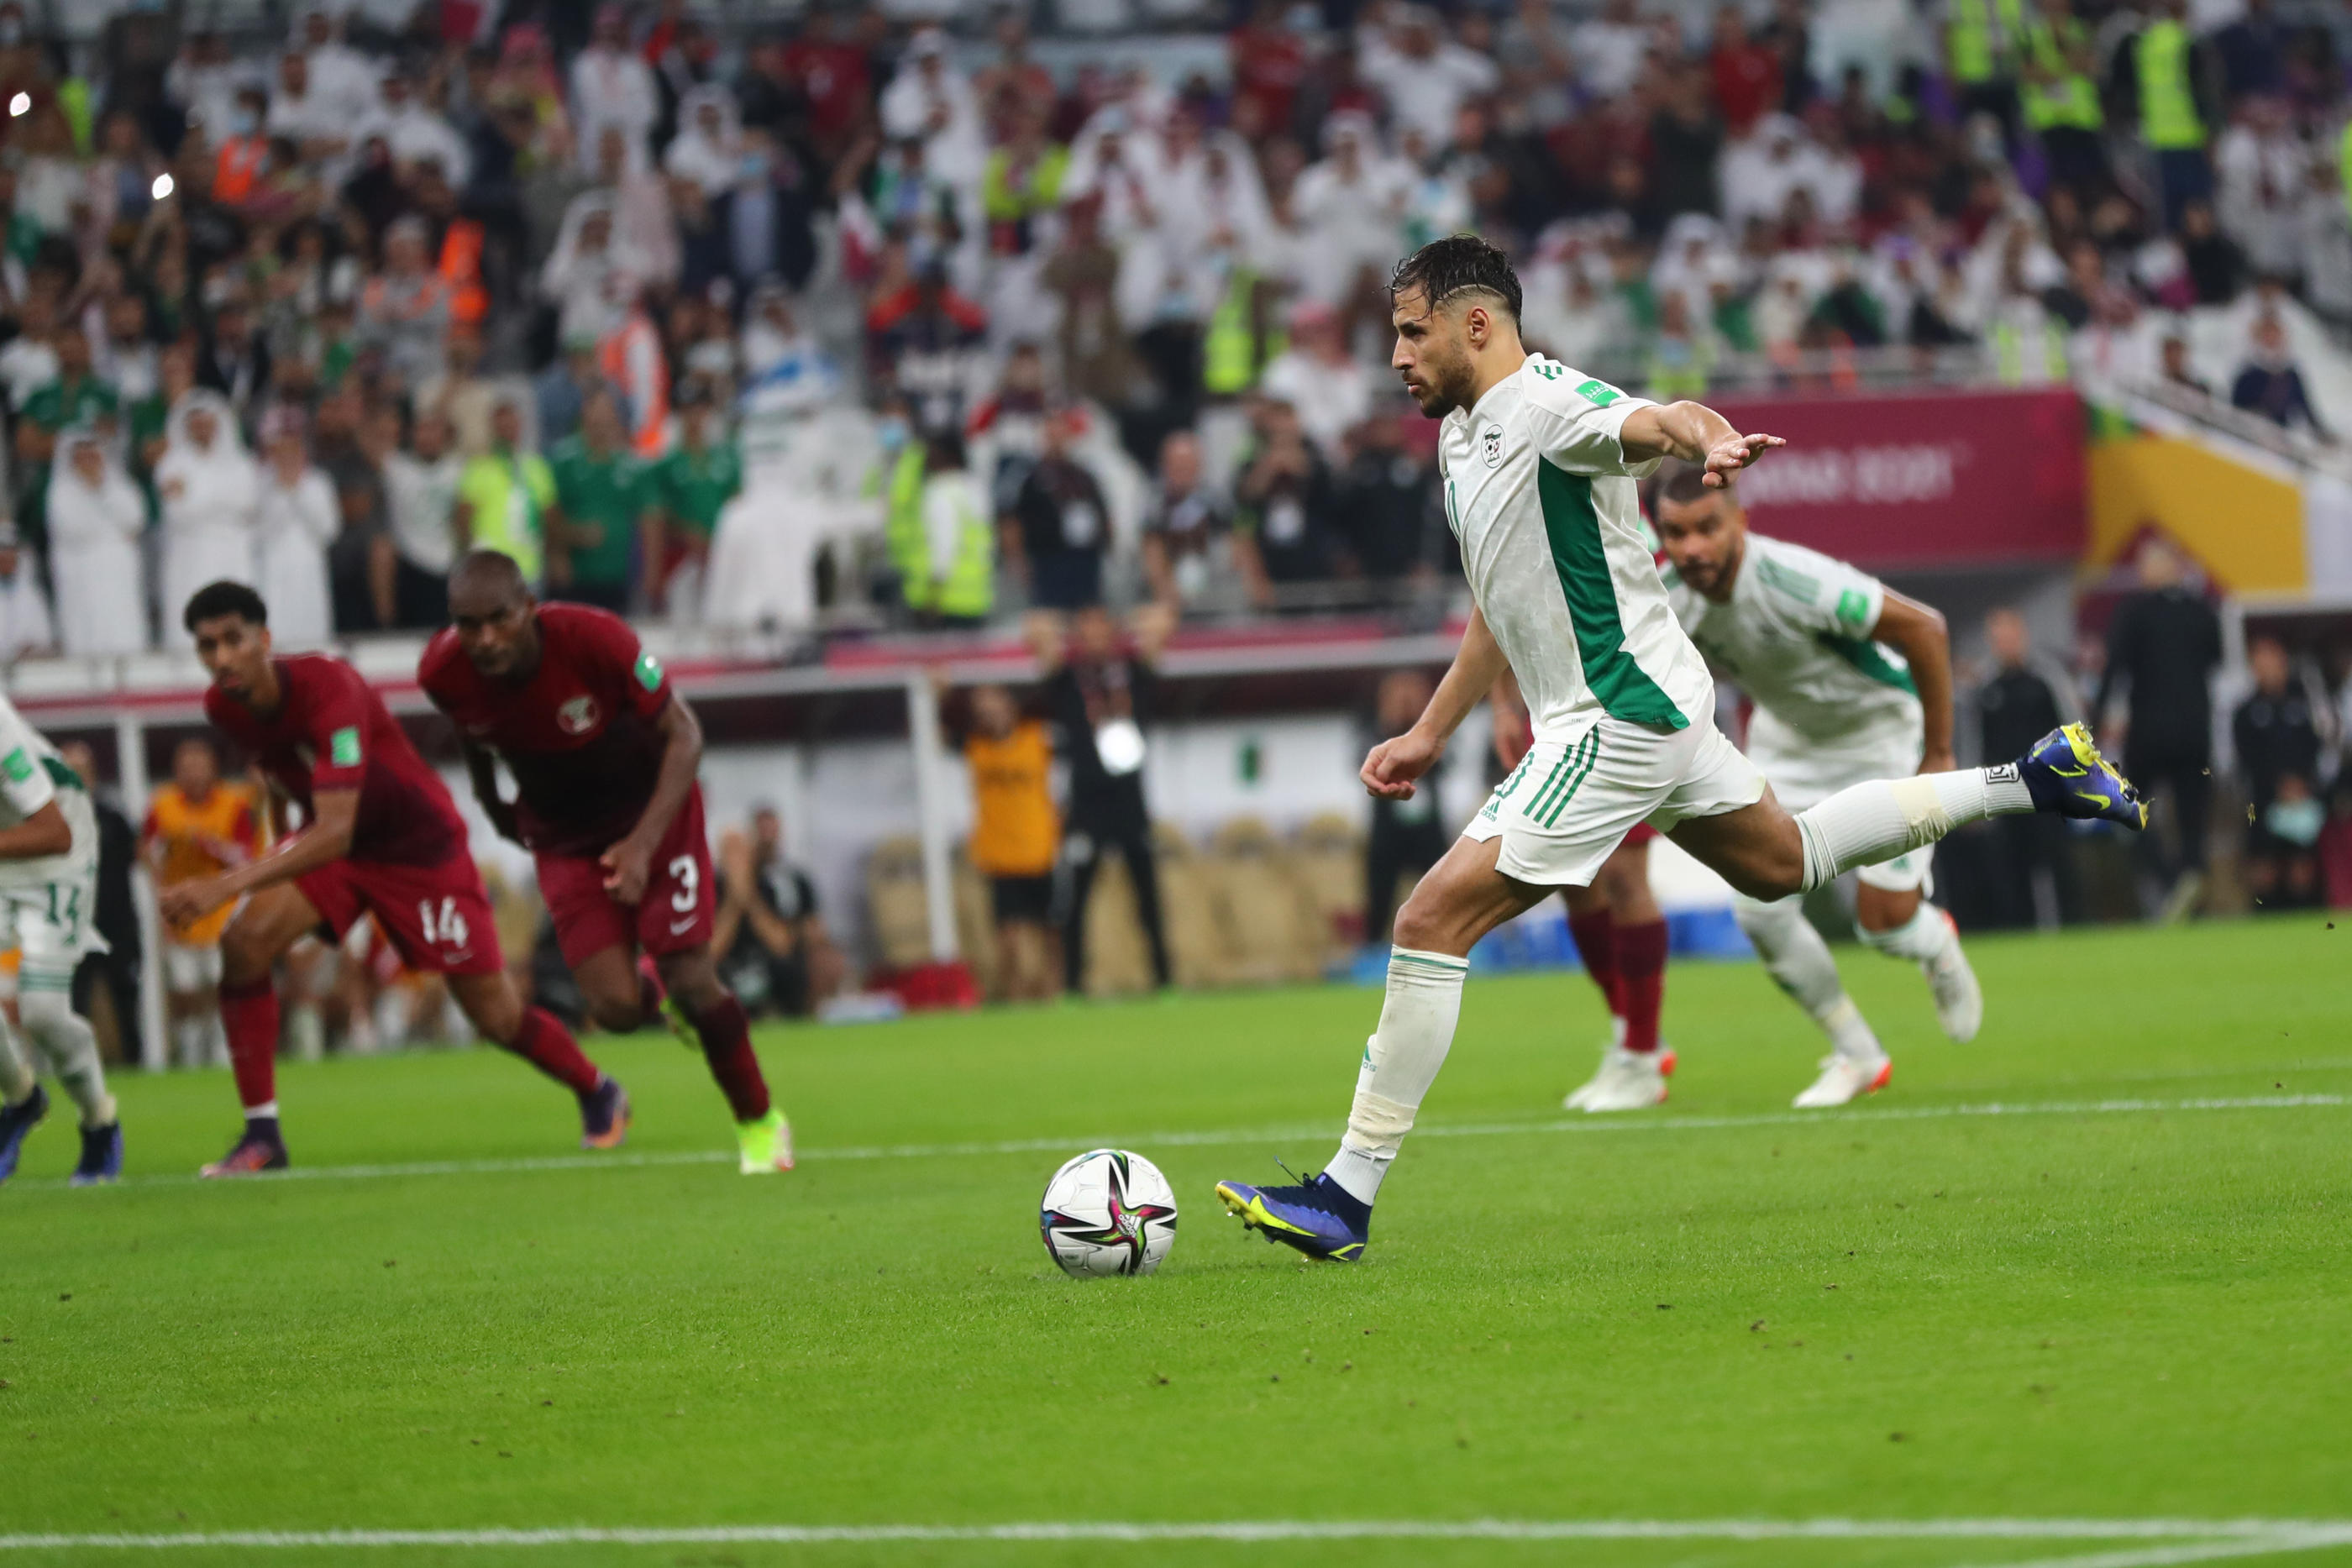 Ballon Football Qatar coupe du monde 2022 - Alger Algérie